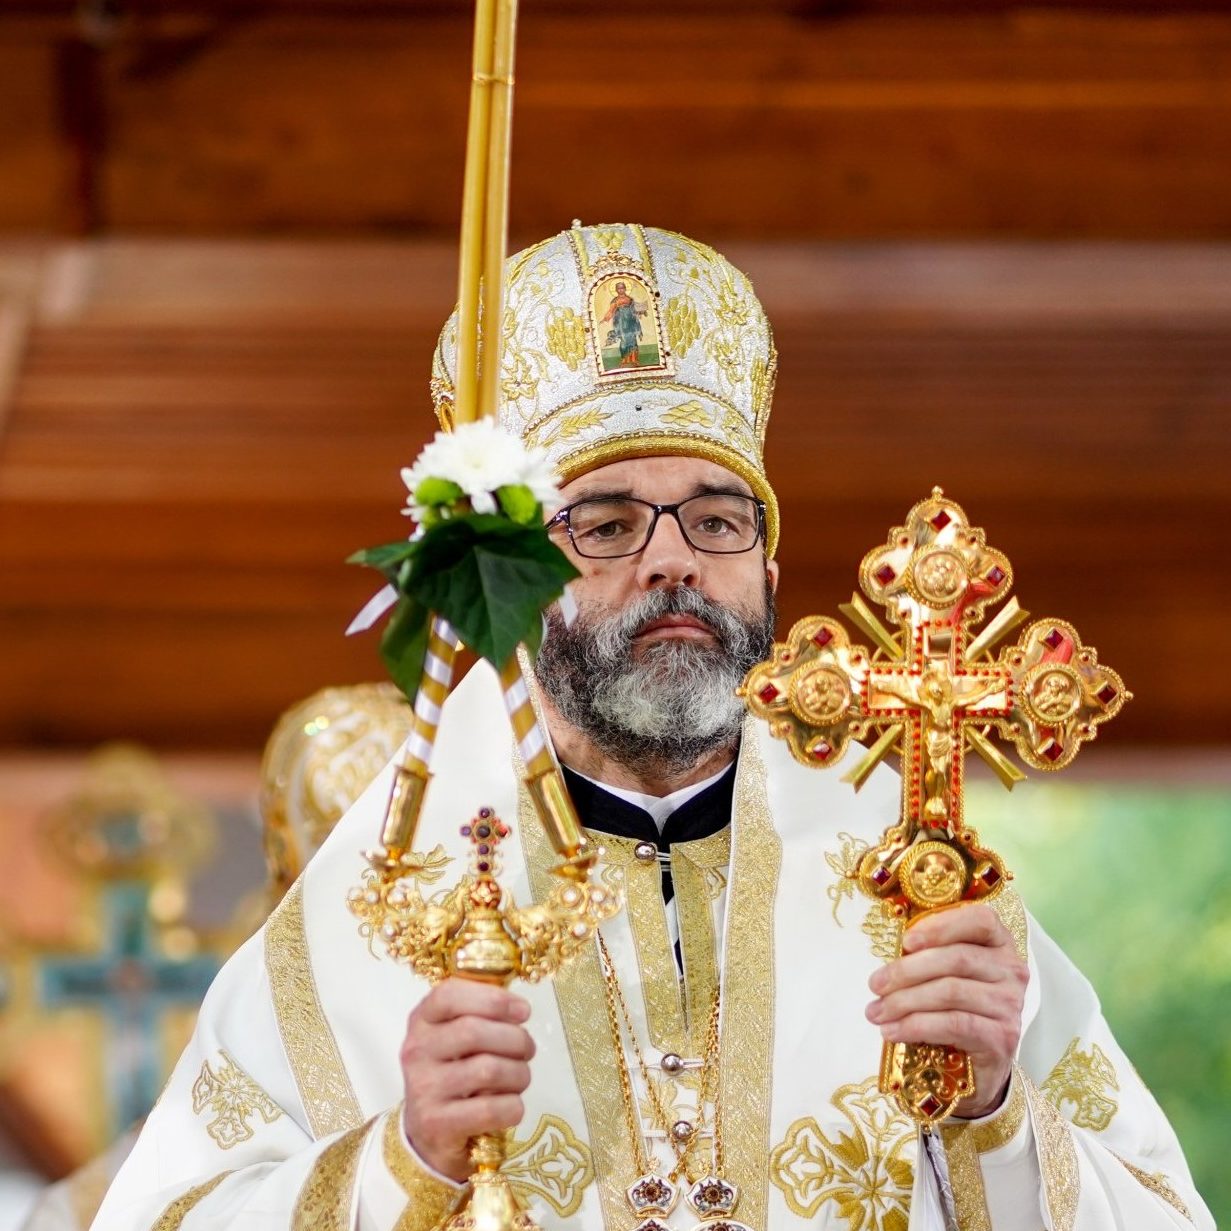 V Niedziela po Wielkanocy – Jego Ekscelencja Arcybiskup Jakub